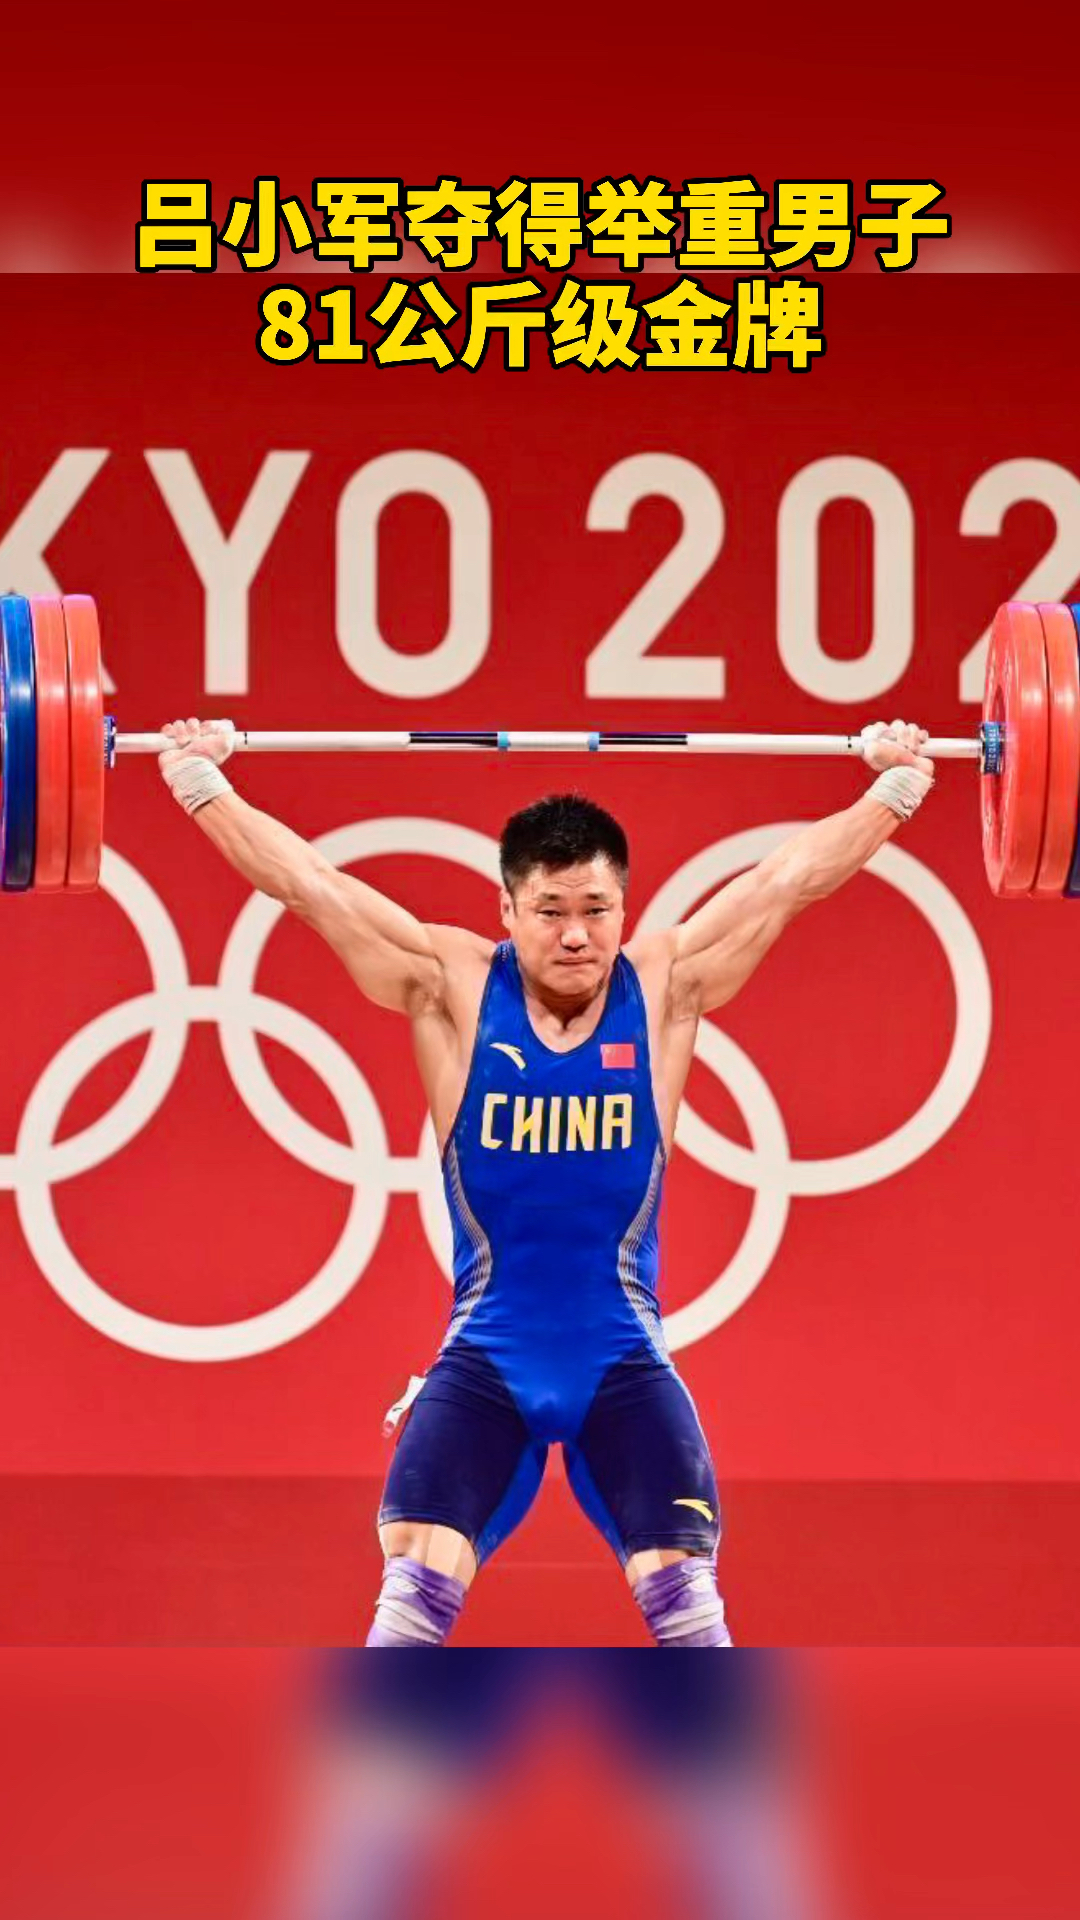 吕小军夺得举重男子81公斤级金牌